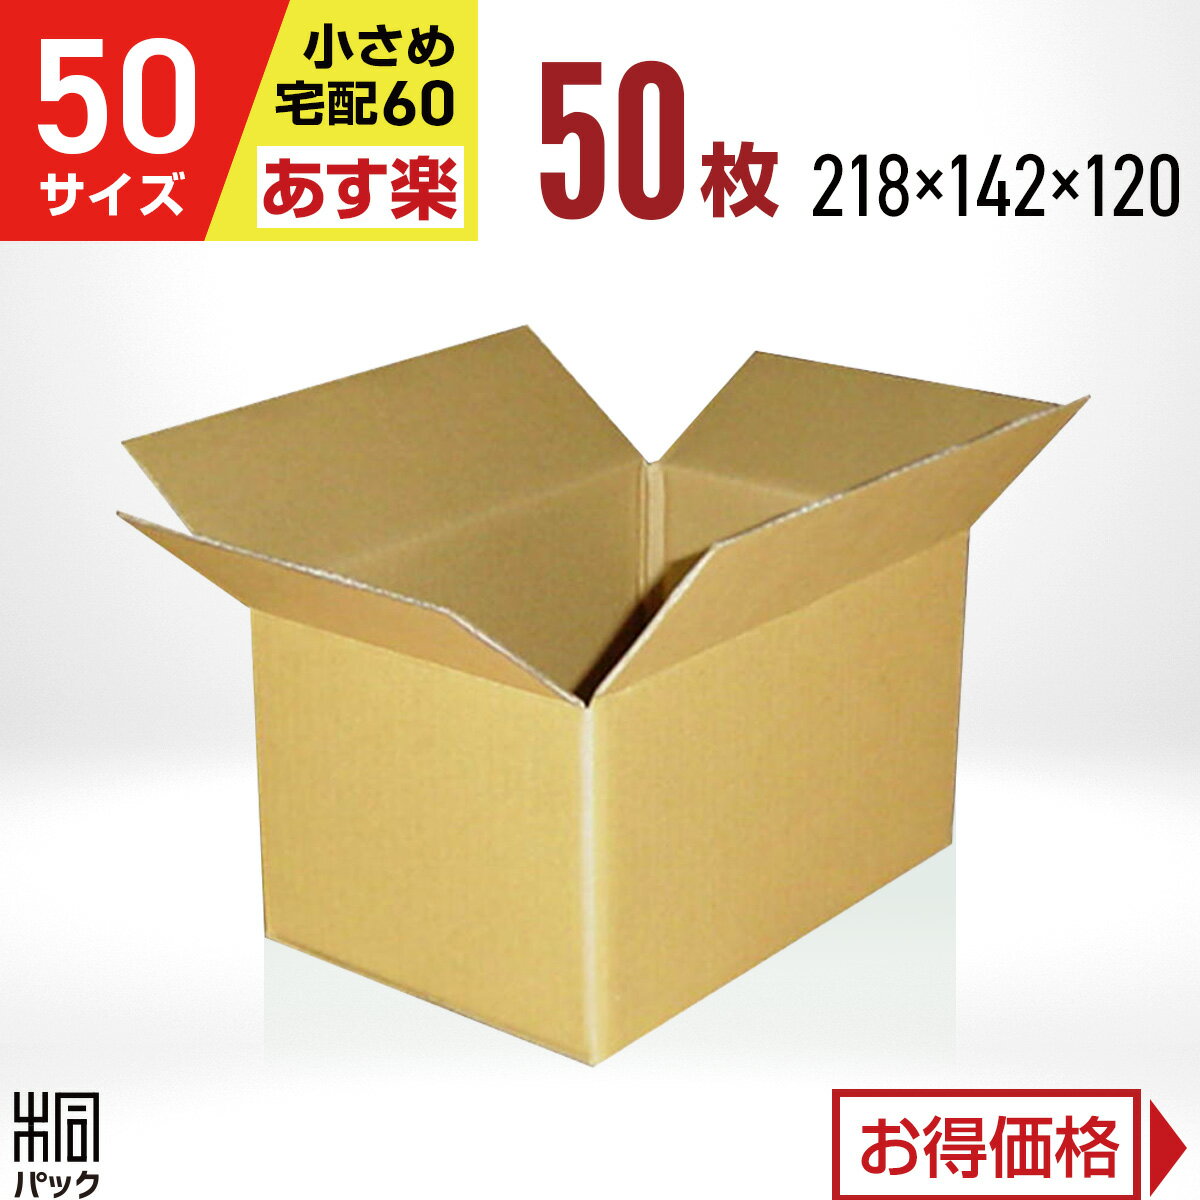 カリラ 段ボール 箱 50サイズ (宅配 60サイズ 対応) 50枚 (218x142x120) 段ボール 60 梱包 通販 資材 用 セット 日本